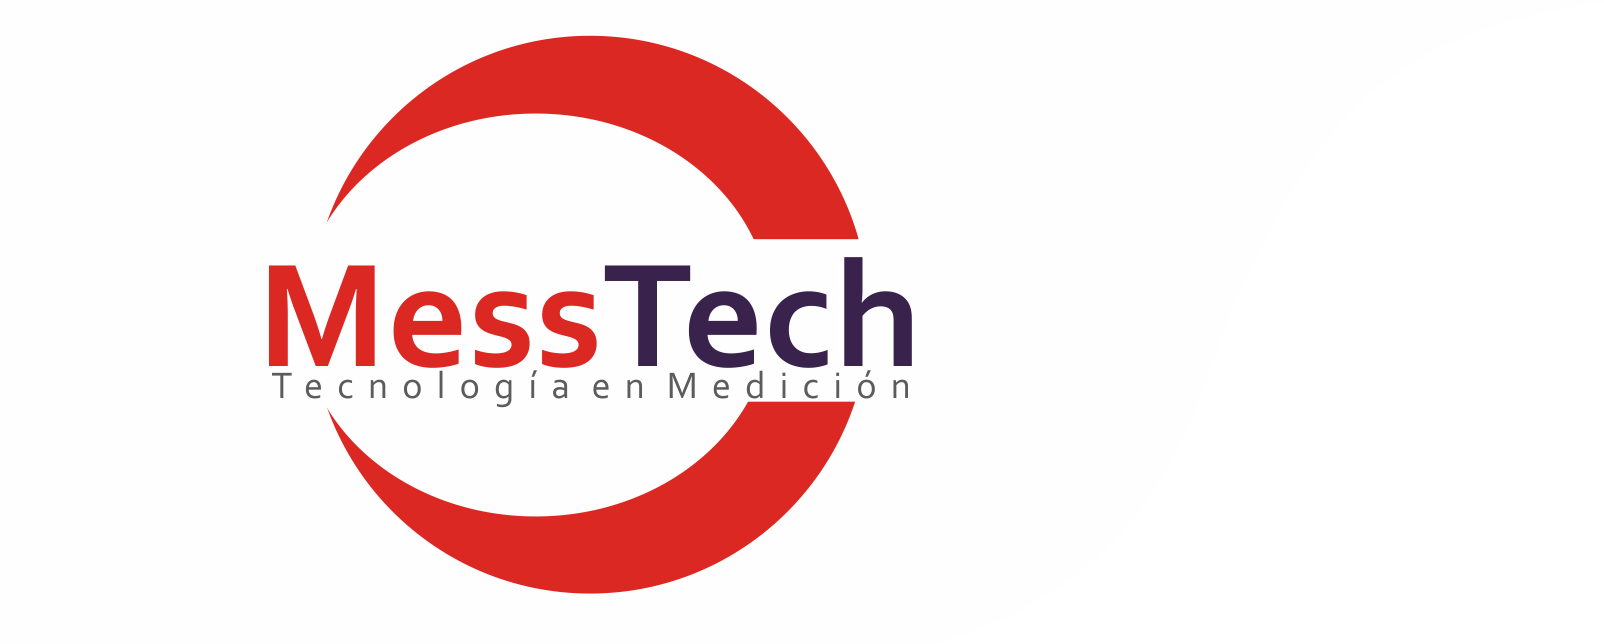 Mess logo